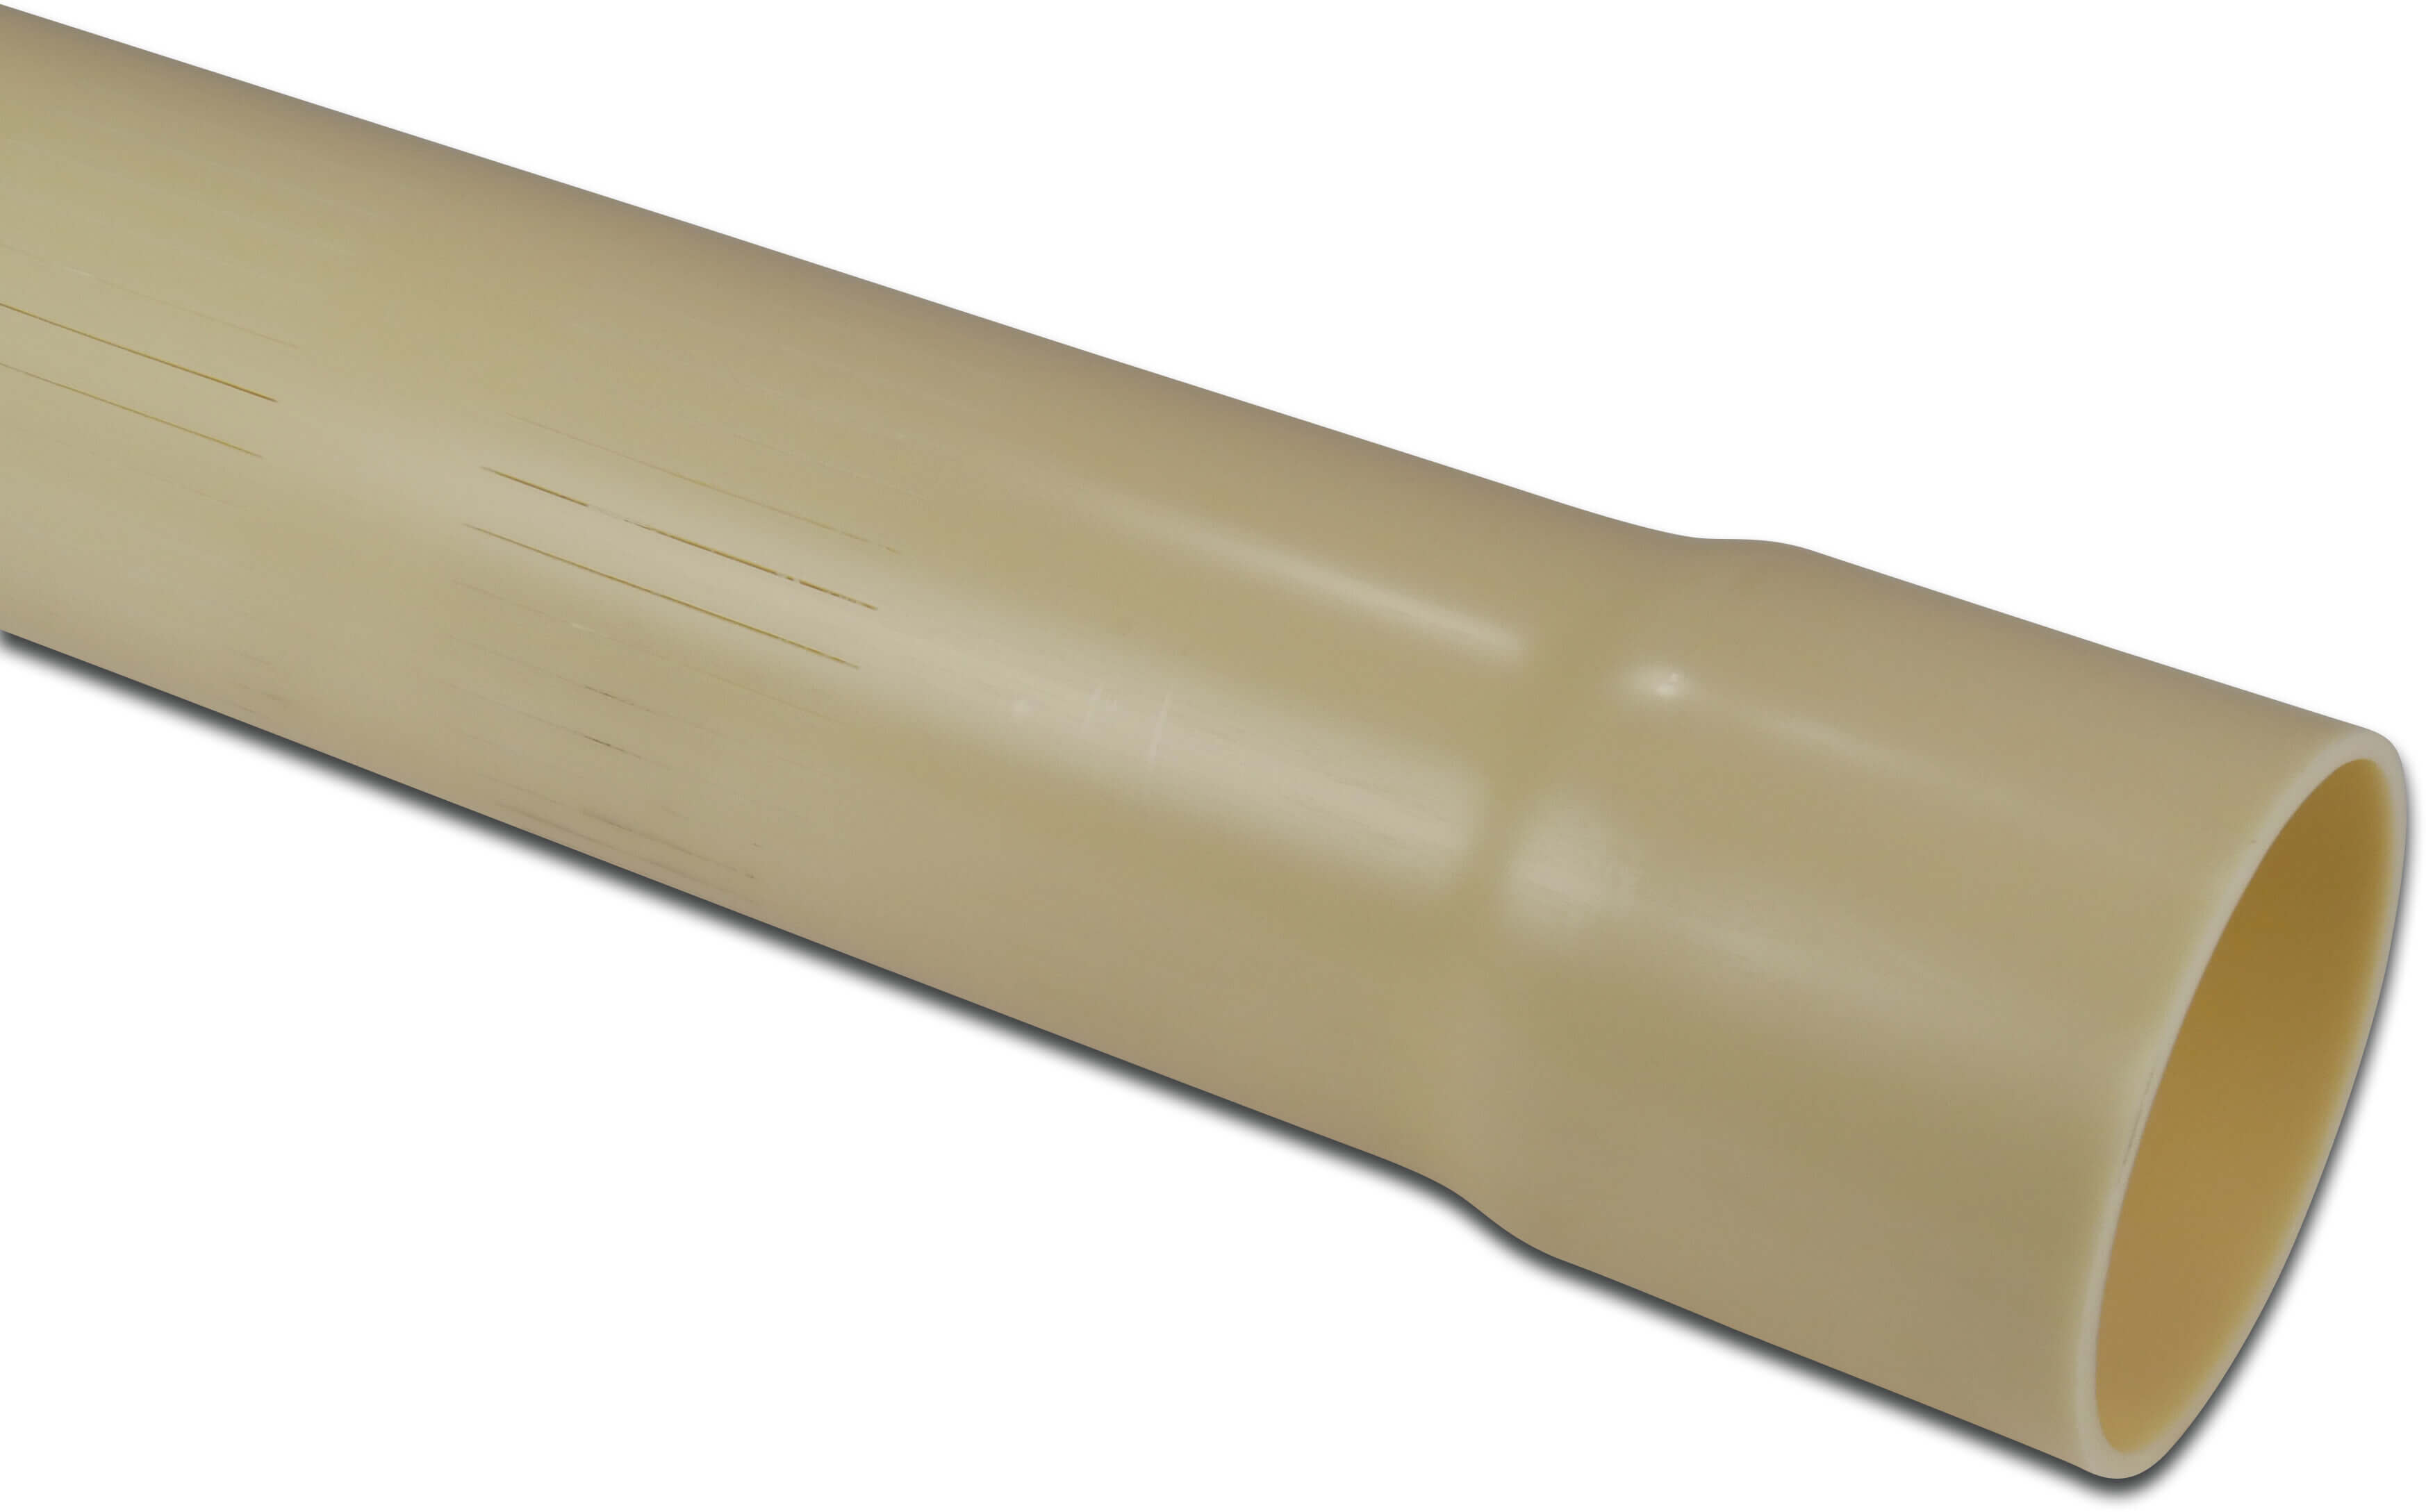 Crépine PVC-U 63 mm x 2,5 mm collage femelle x lisse 5m 0,3 mm ISO-PN8 crème 5m